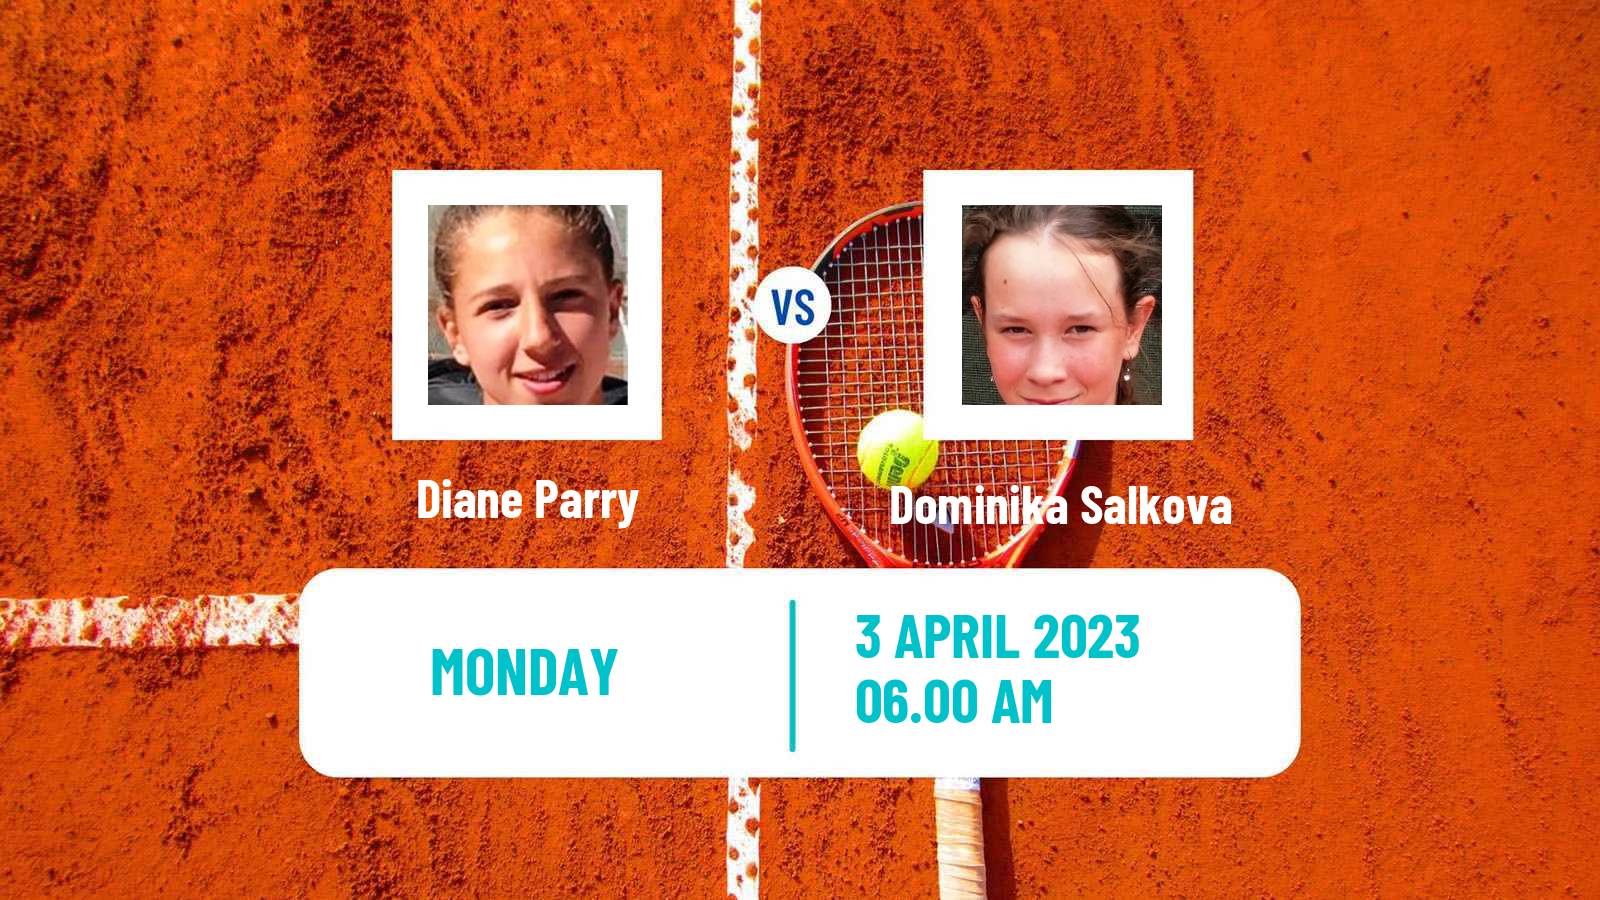 Tennis ITF Tournaments Diane Parry - Dominika Salkova